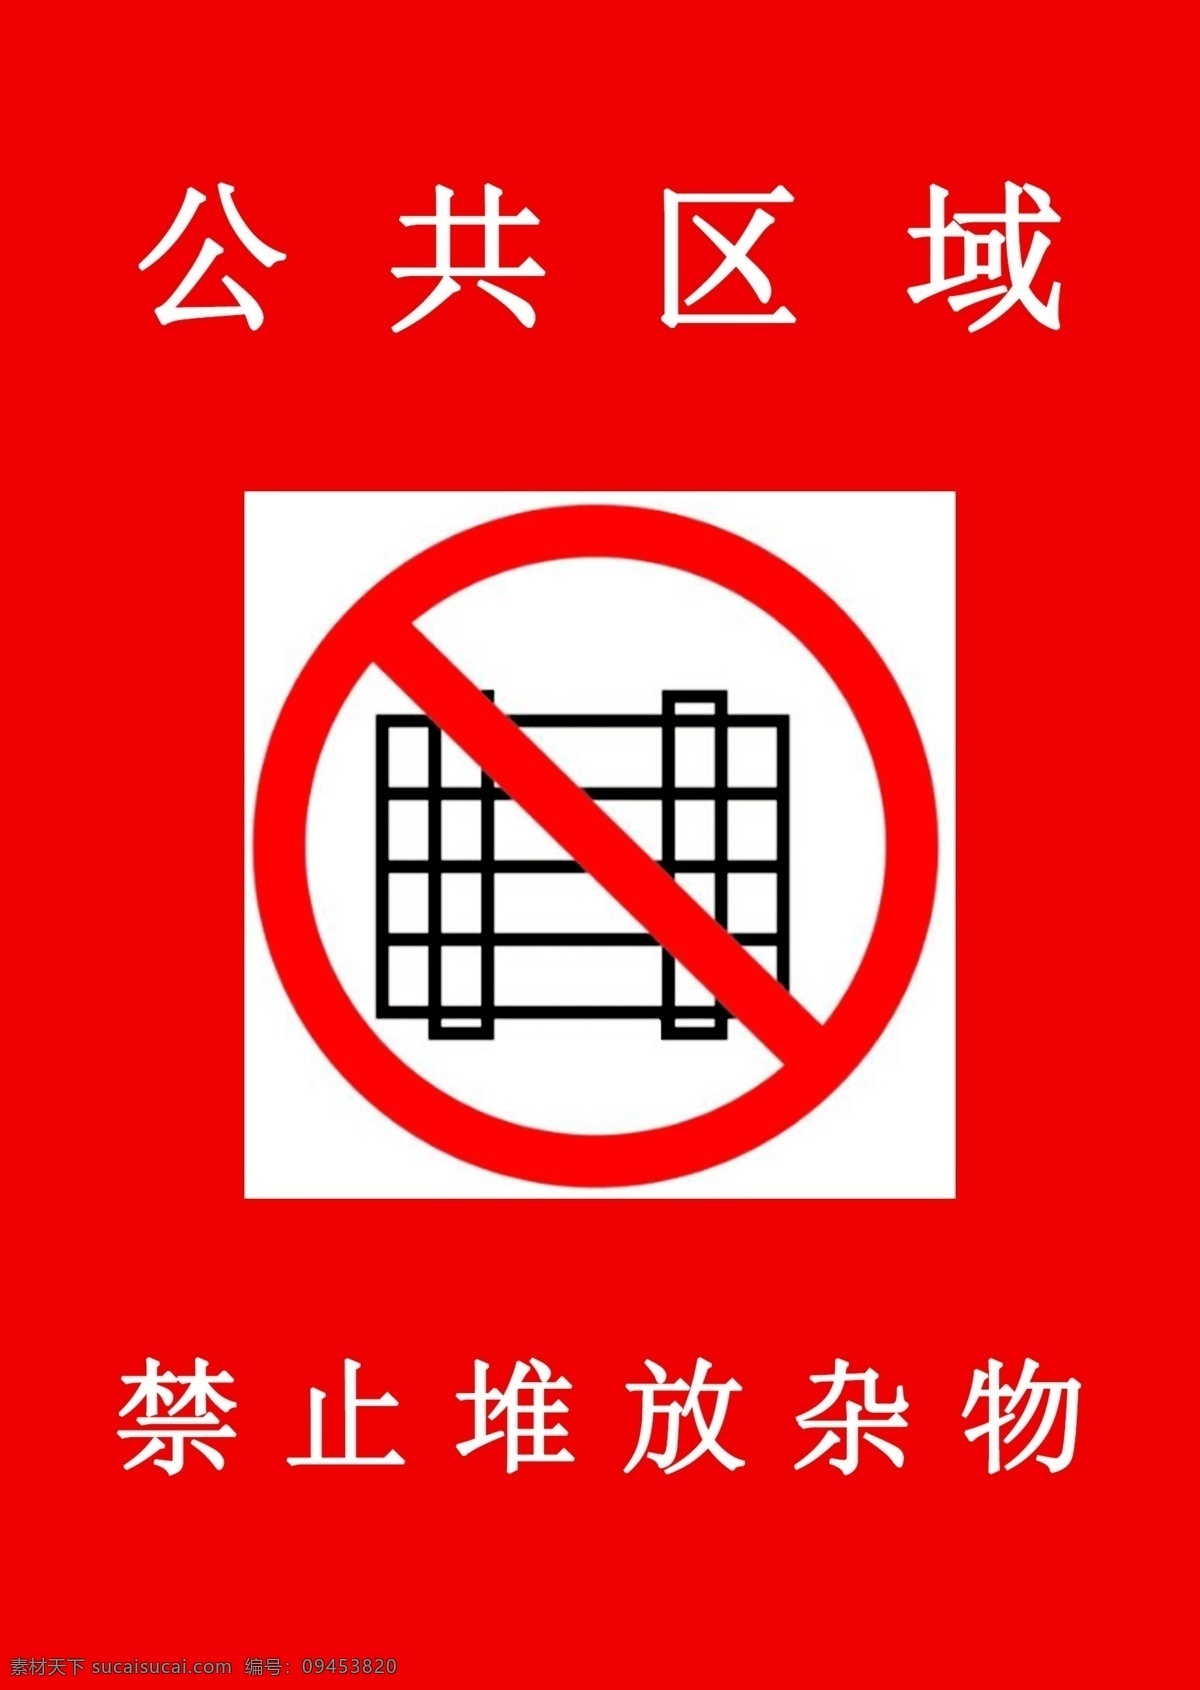 禁止堆放杂物 公共 区域 禁止 堆放 杂物 标志图标 公共标识标志